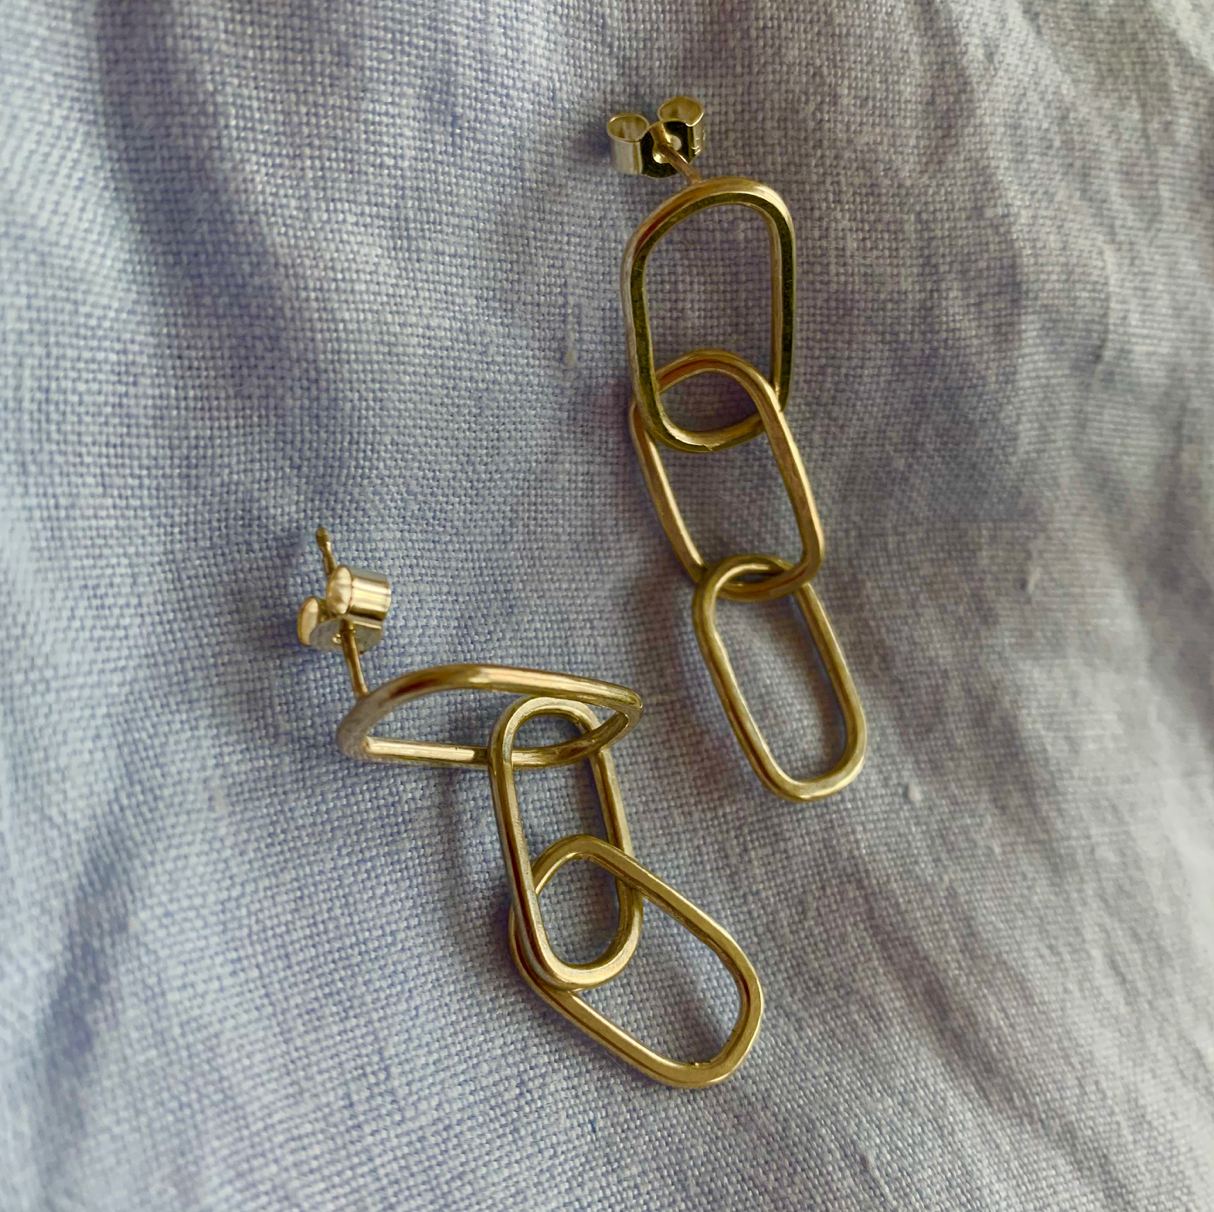 Gold rectangular pastille triple-chain link earrings.